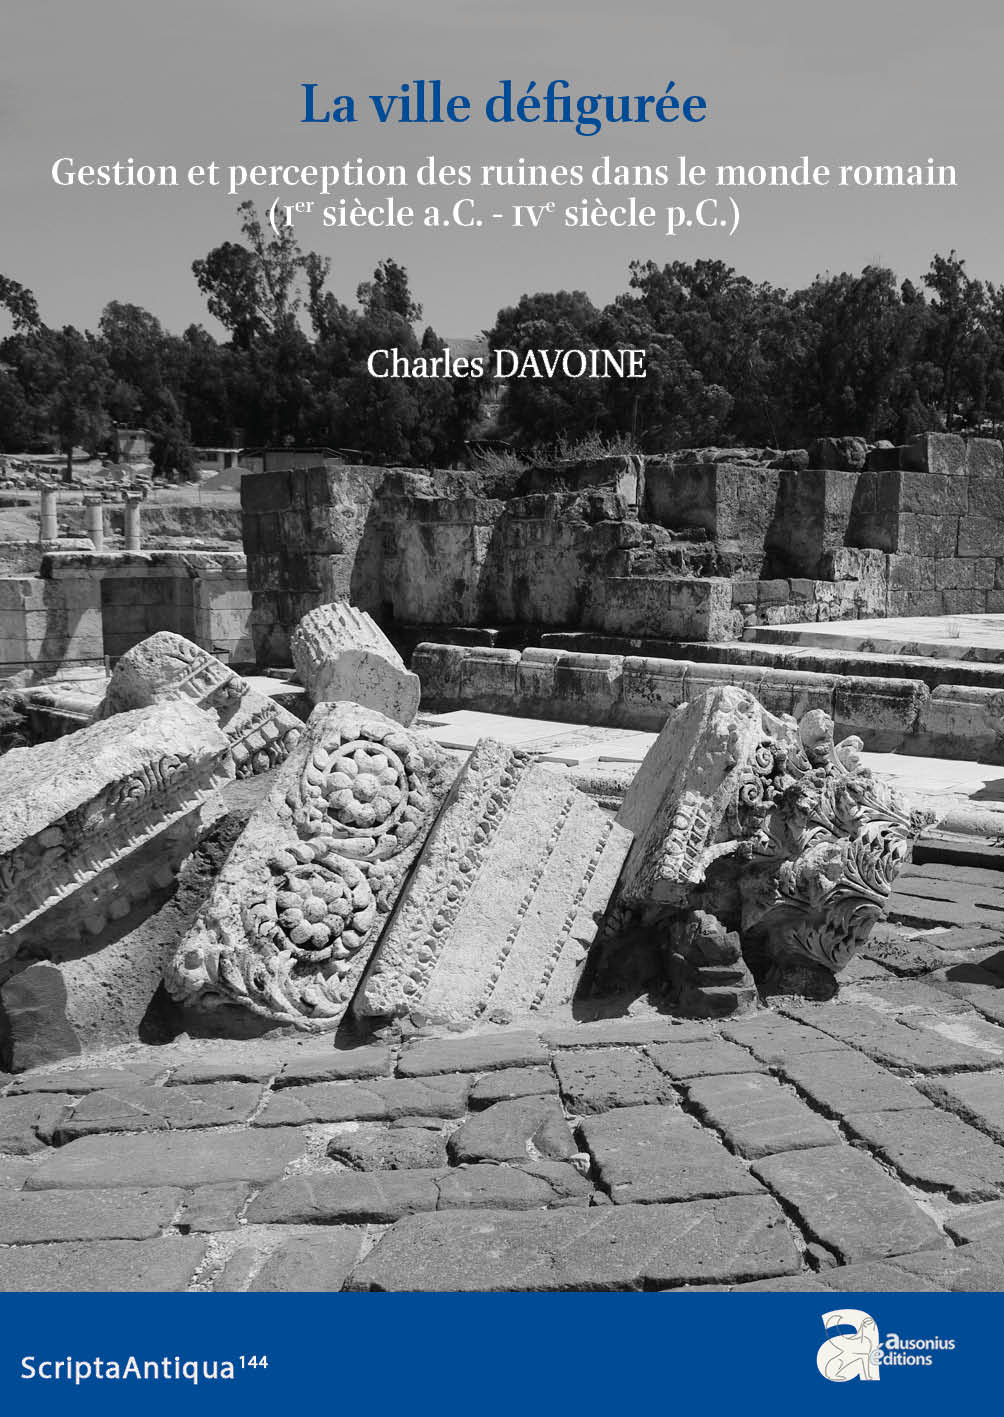 La ville Défigurée. Gestion et perception des ruines dans le monde romain (Ier siècle a.C.-IVe siècle p.C.).